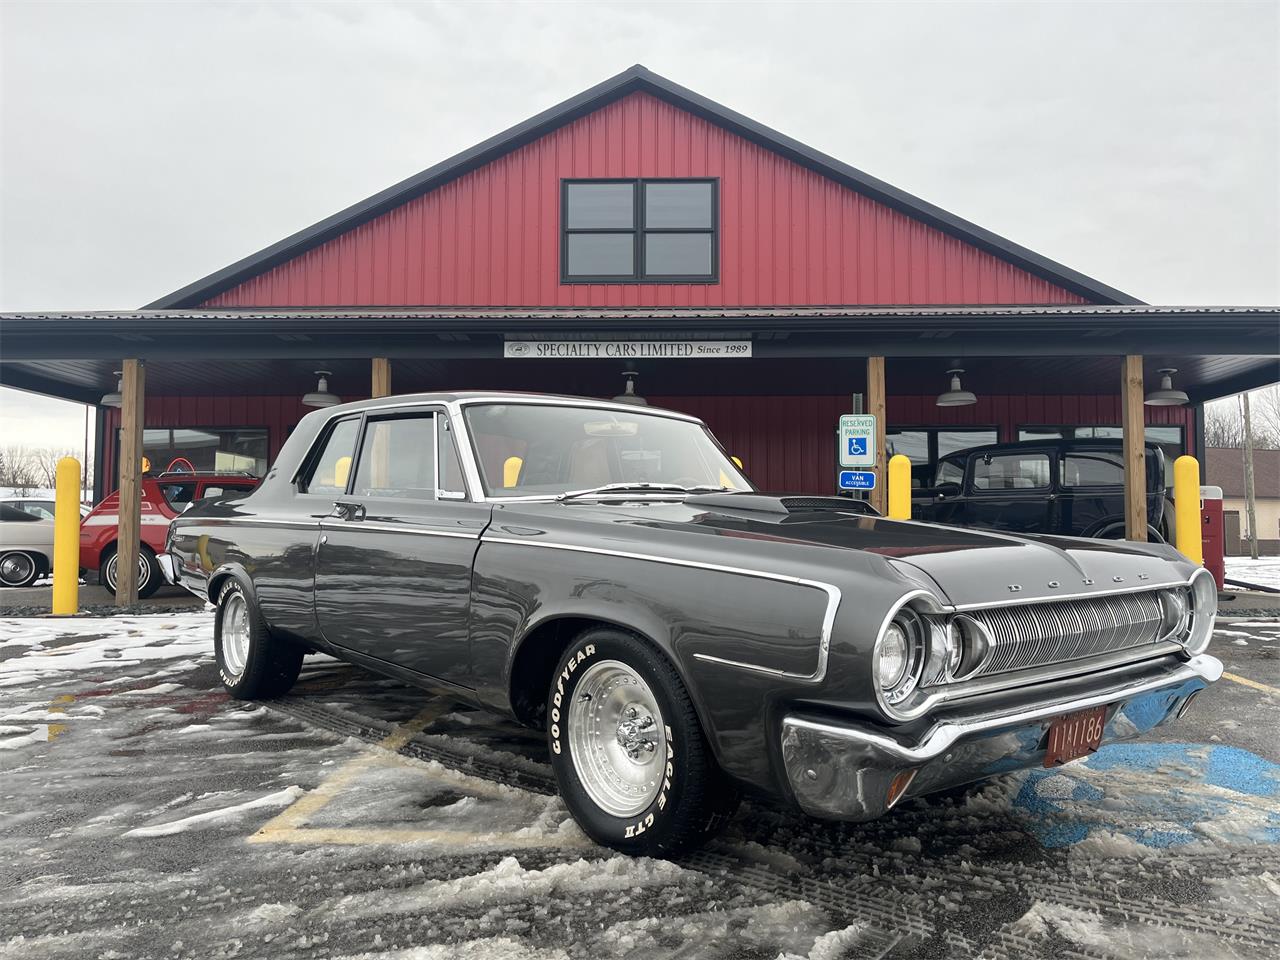 For Sale: 1964 Dodge Polara in Latrobe, Pennsylvania for sale in Latrobe, PA